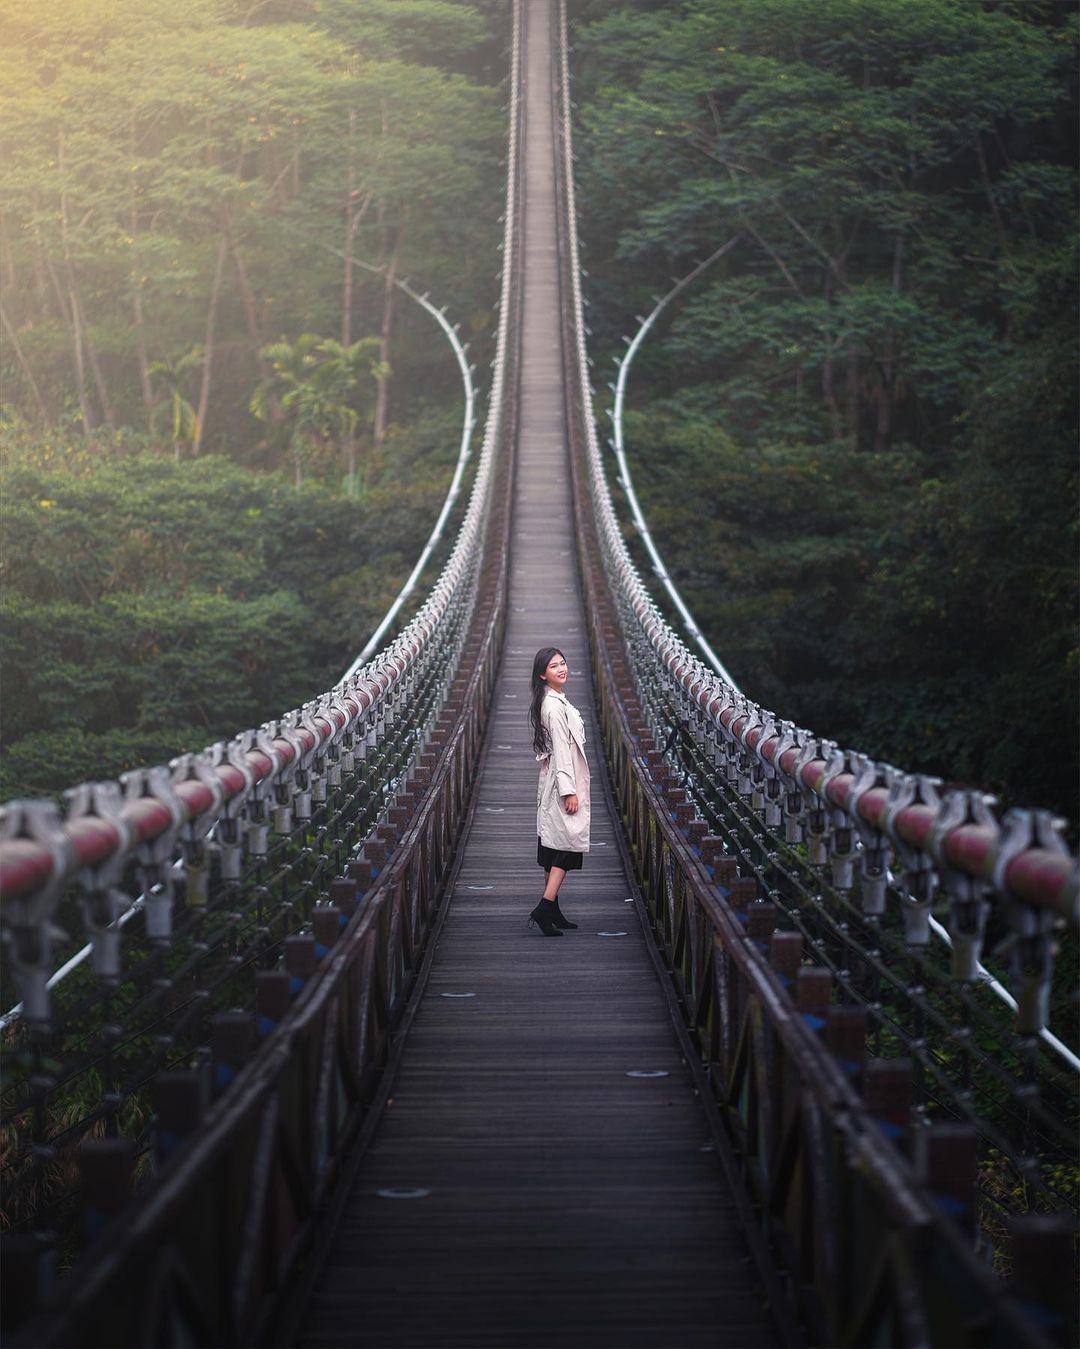 神秘感十足的達娜伊谷吊橋在阿里山來場淨化心靈之旅吧！-⠀⠀⠀⠀⠀⠀⠀⠀⠀⠀⠀感謝 @xiu.0109 分享的美照-⠀⠀⠀⠀⠀⠀⠀⠀...